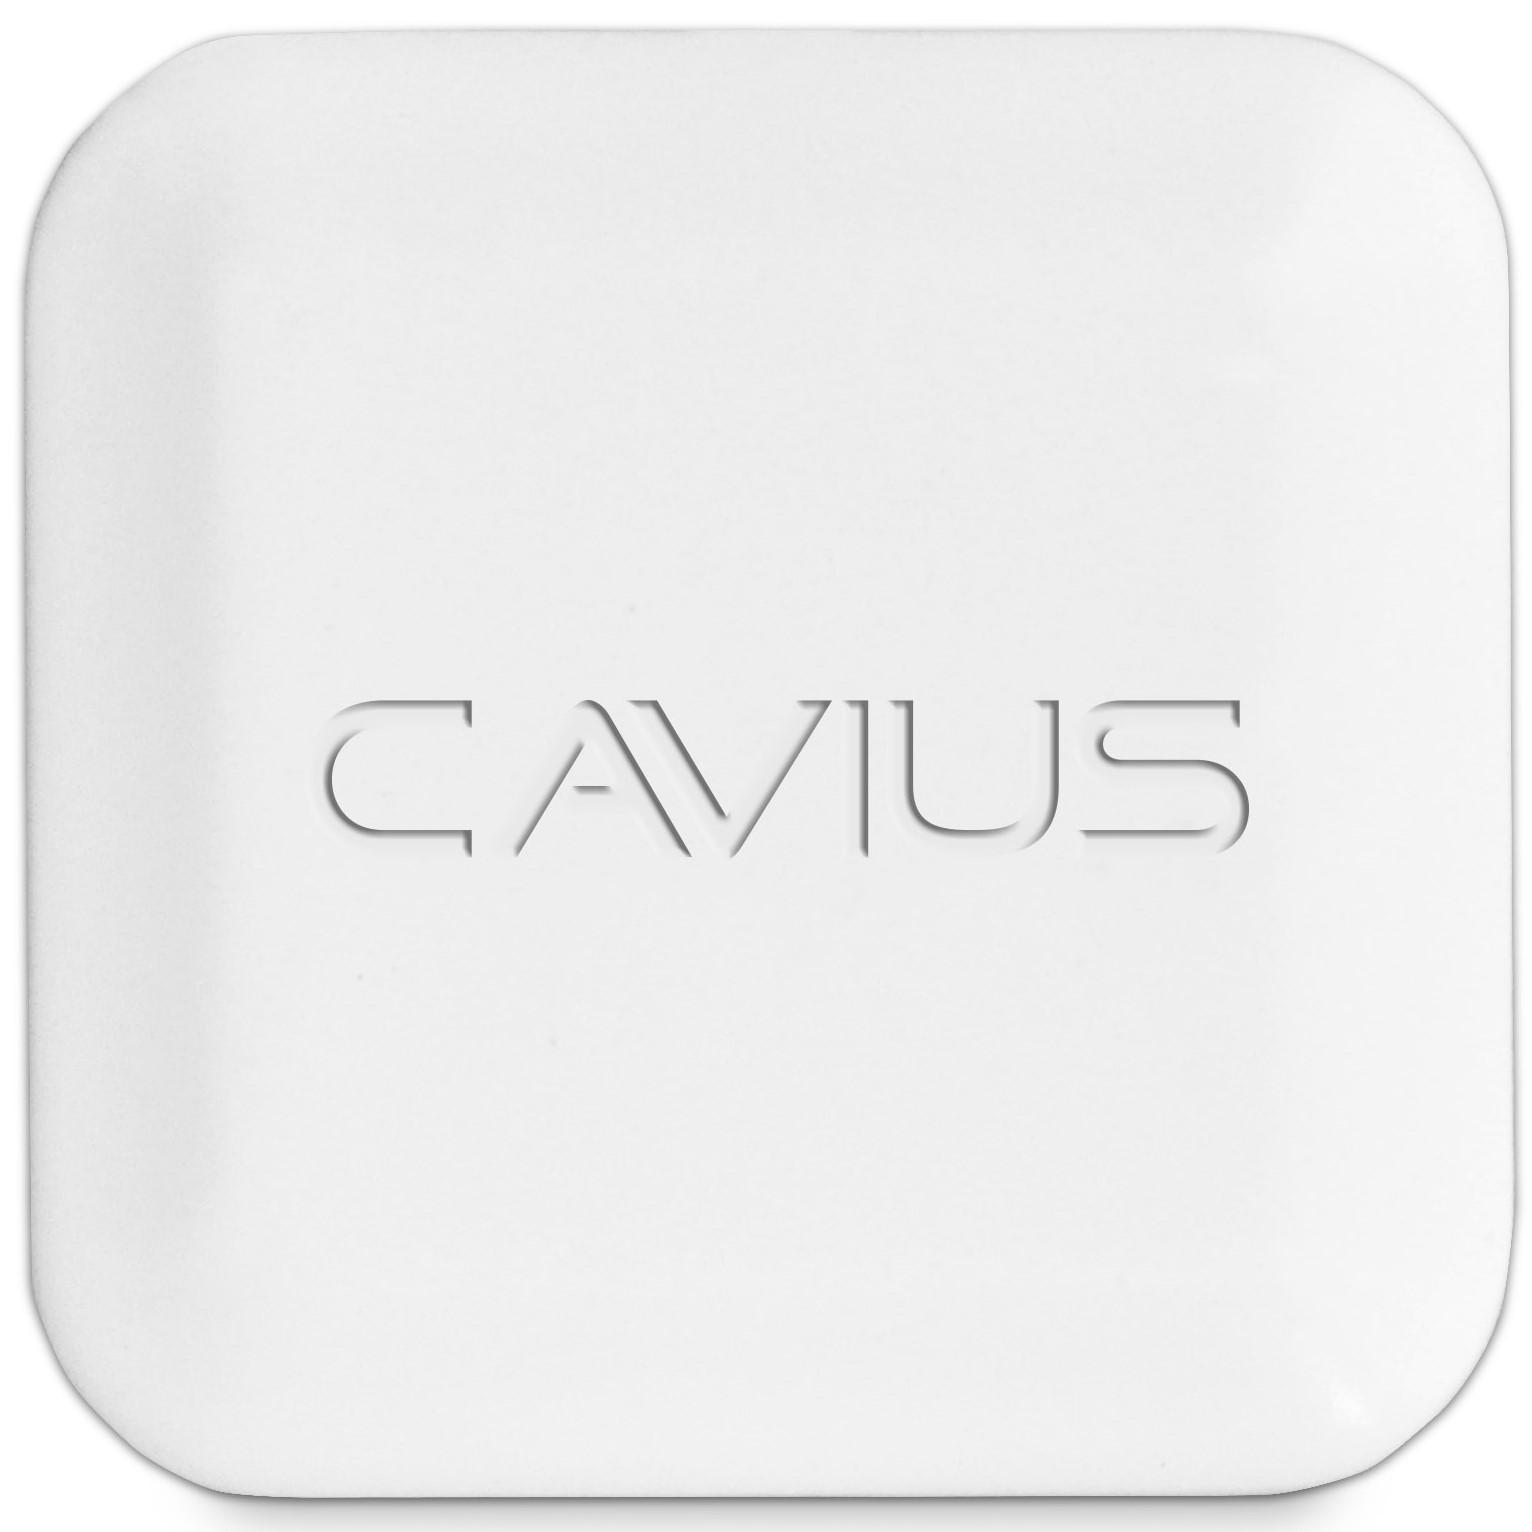 Accessoires - Cavius